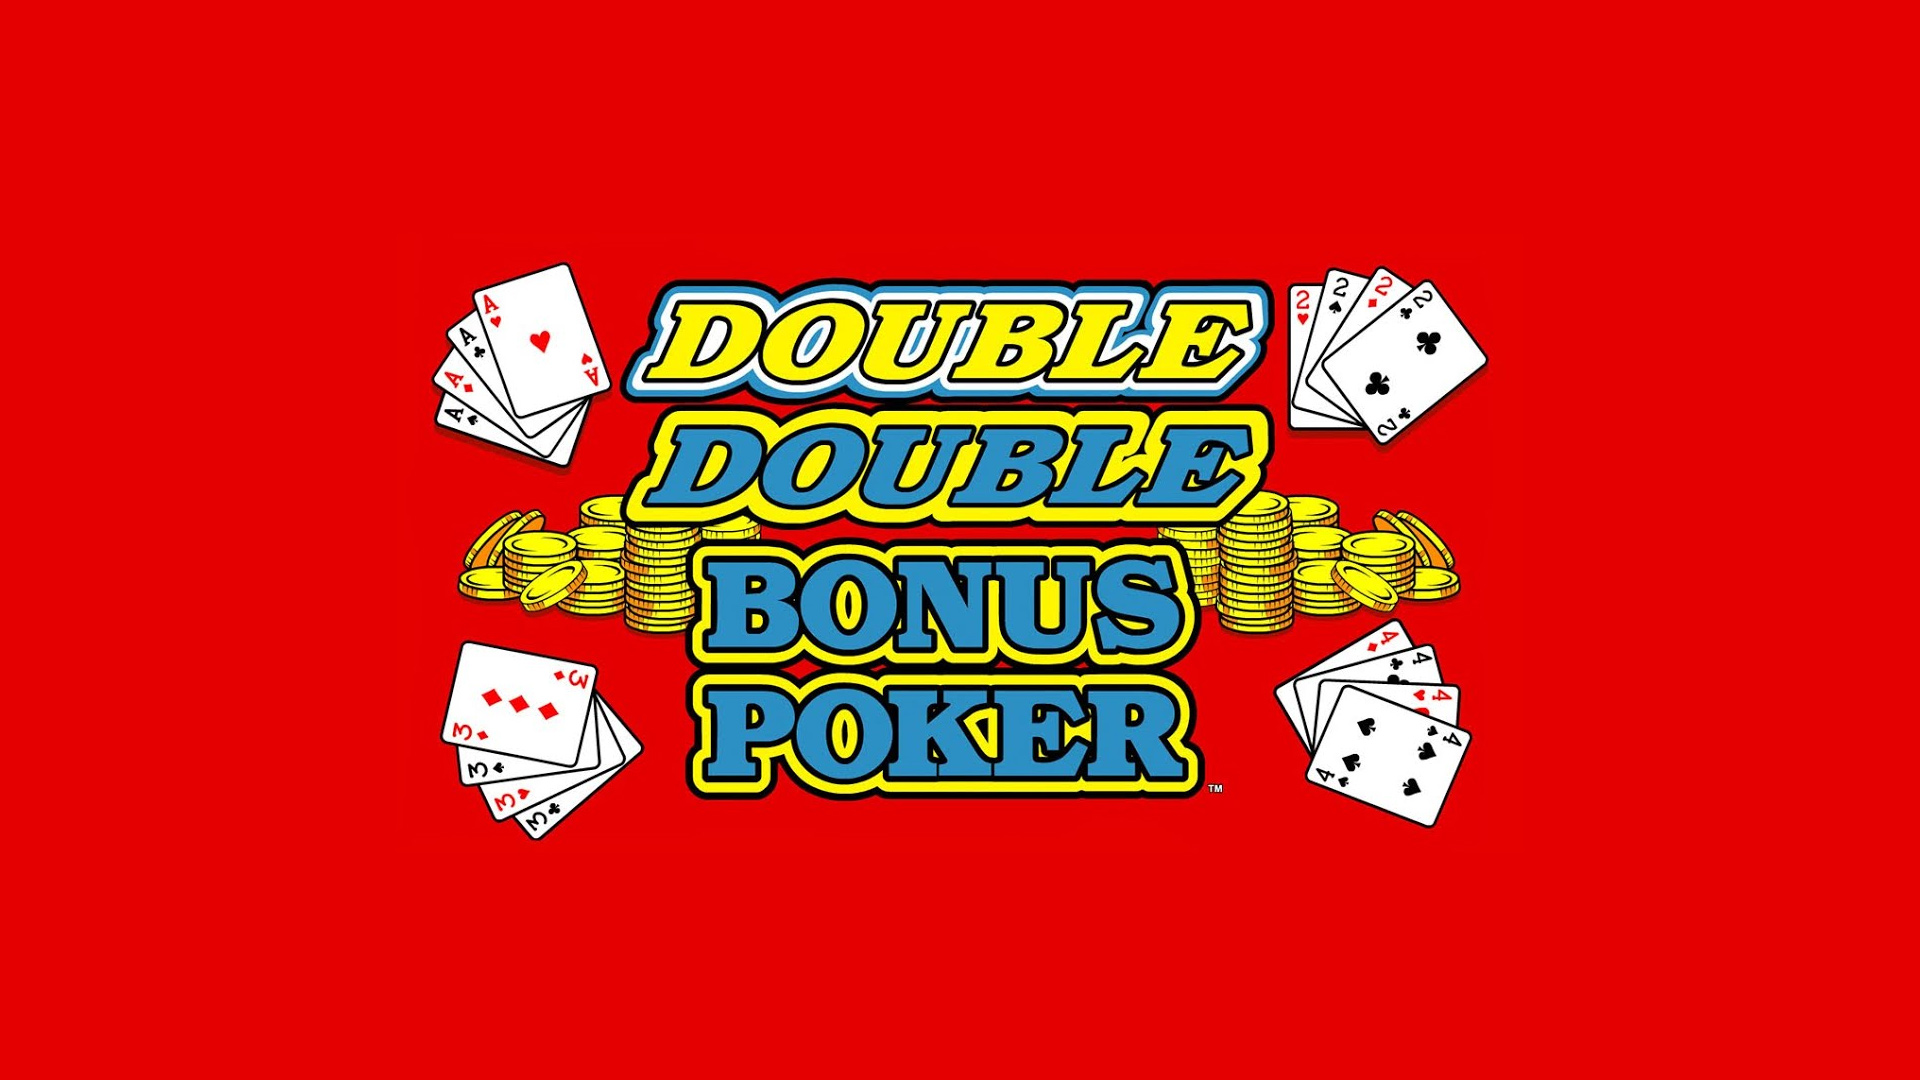 Double-Double-Bonus-Poker-Video-Poker-belly-glass-design_q085_1920x1080